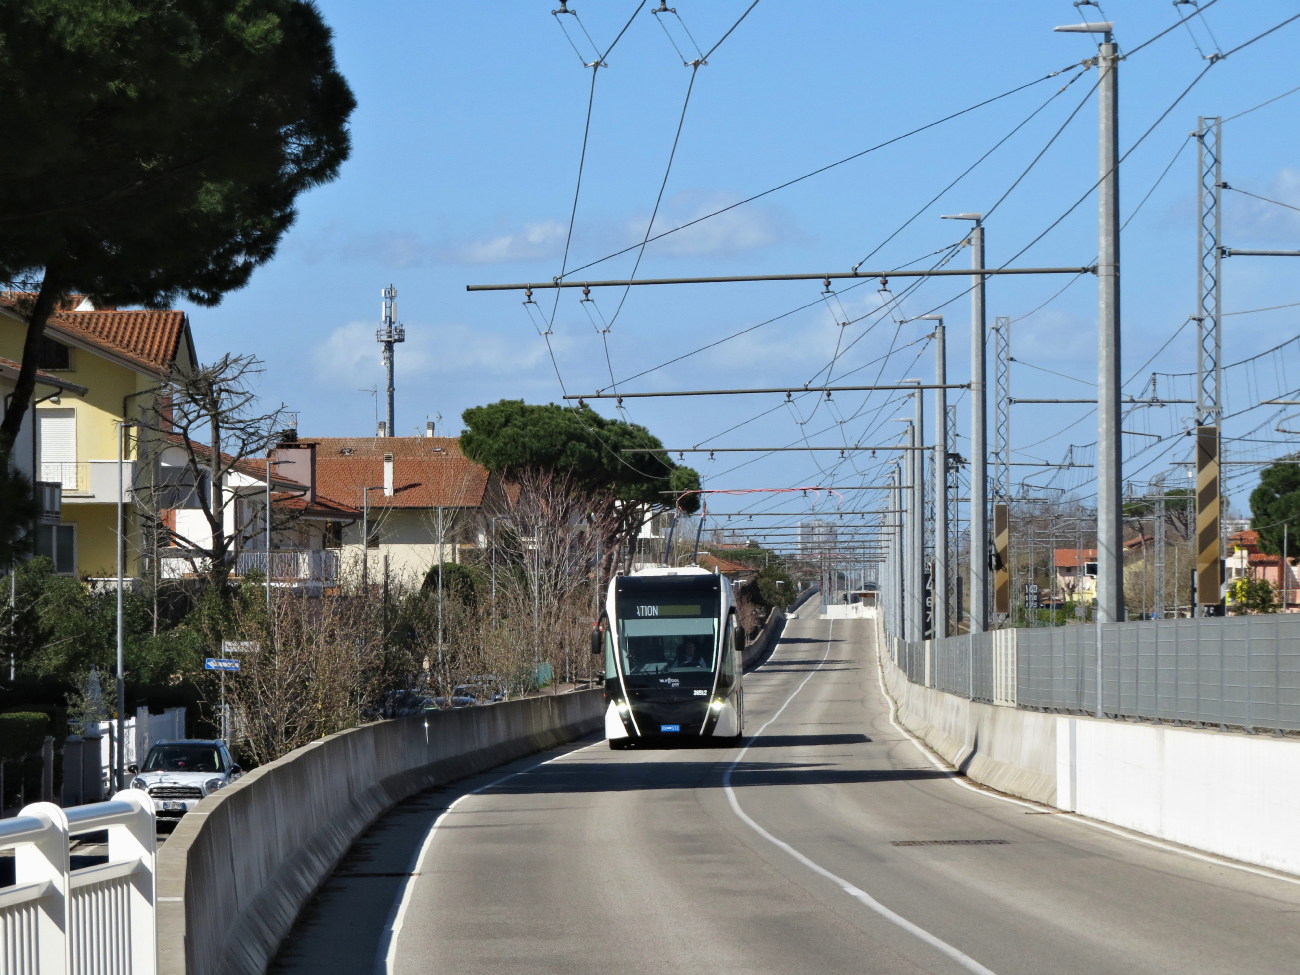 Римини, Van Hool Exqui.City 18 № 36512; Римини — Инфраструктура линии скоростного троллейбуса Metromare